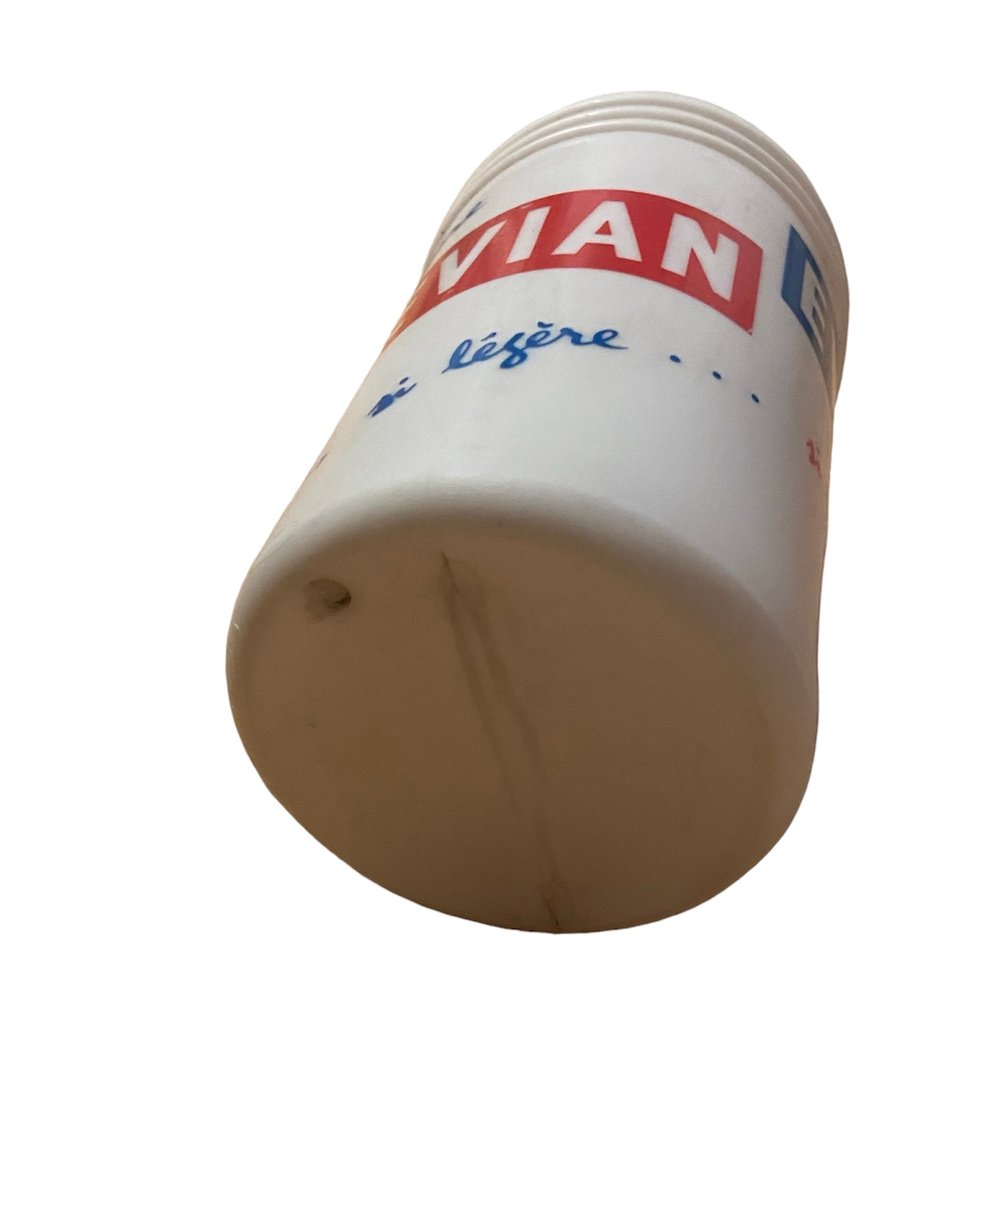 1965-1966 - Tour de France - Evian water bottle